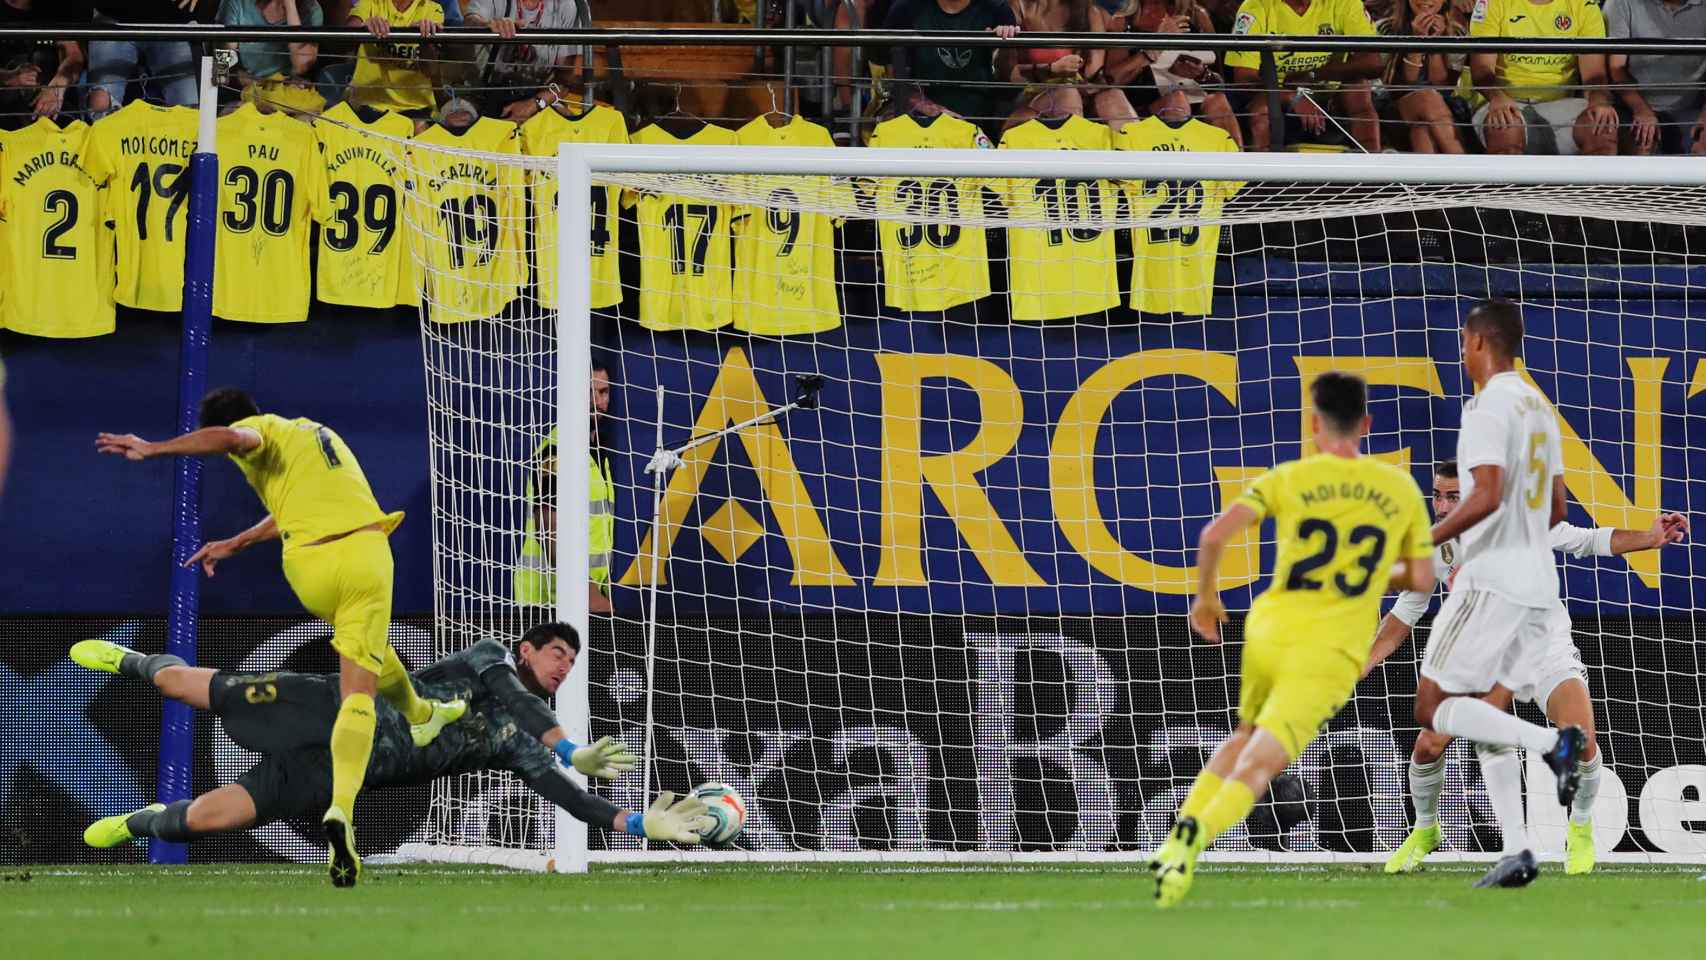 Gerard Moreno en el momento del gol ante Courtois en el Villarreal - Real Madrid